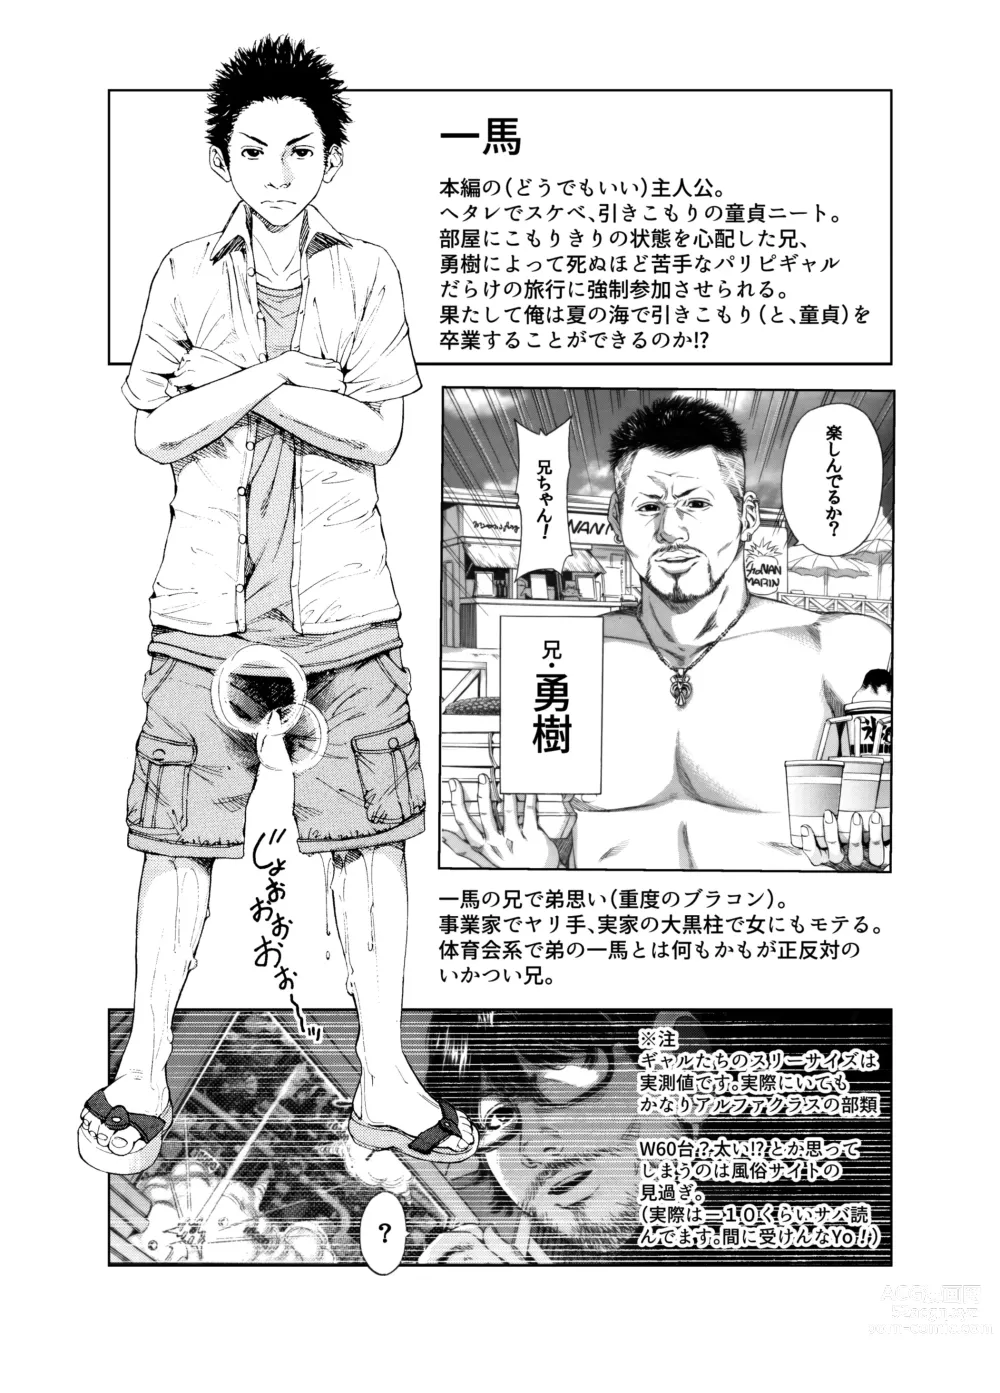 Page 3 of doujinshi Okumori Boy Shoki Ero Manga-shuu “San-biki ga yaru”